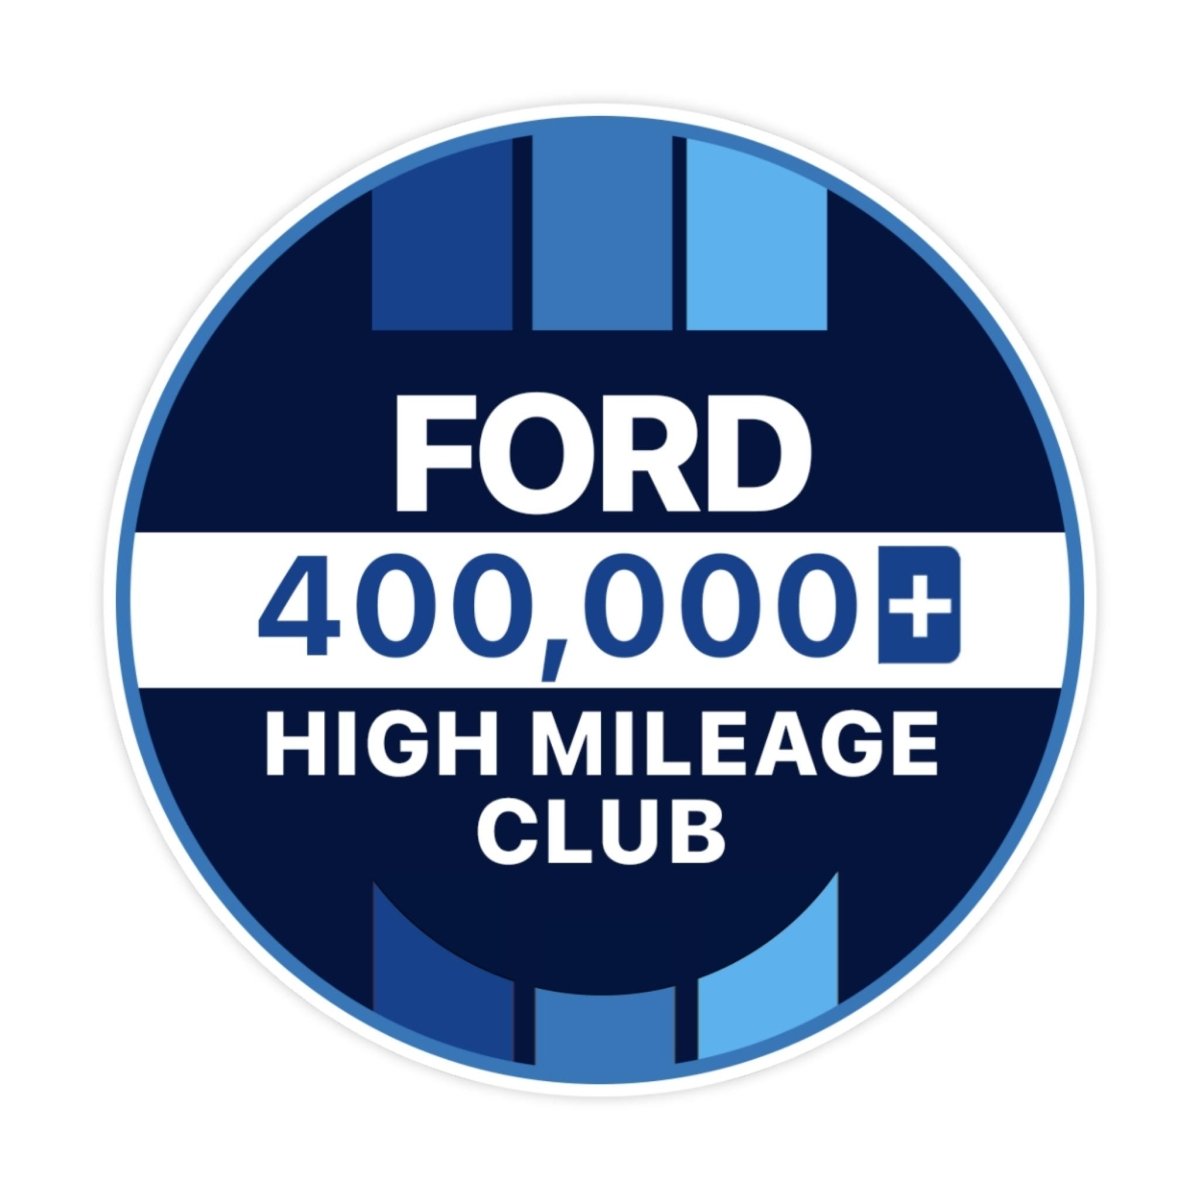 Ford 500k High Mileage Club Sticker - stickerbullFord 500k High Mileage Club StickerRetail StickerstickerbullstickerbullTaylor_Ford400k [#121]400kFord 500k High Mileage Club Sticker